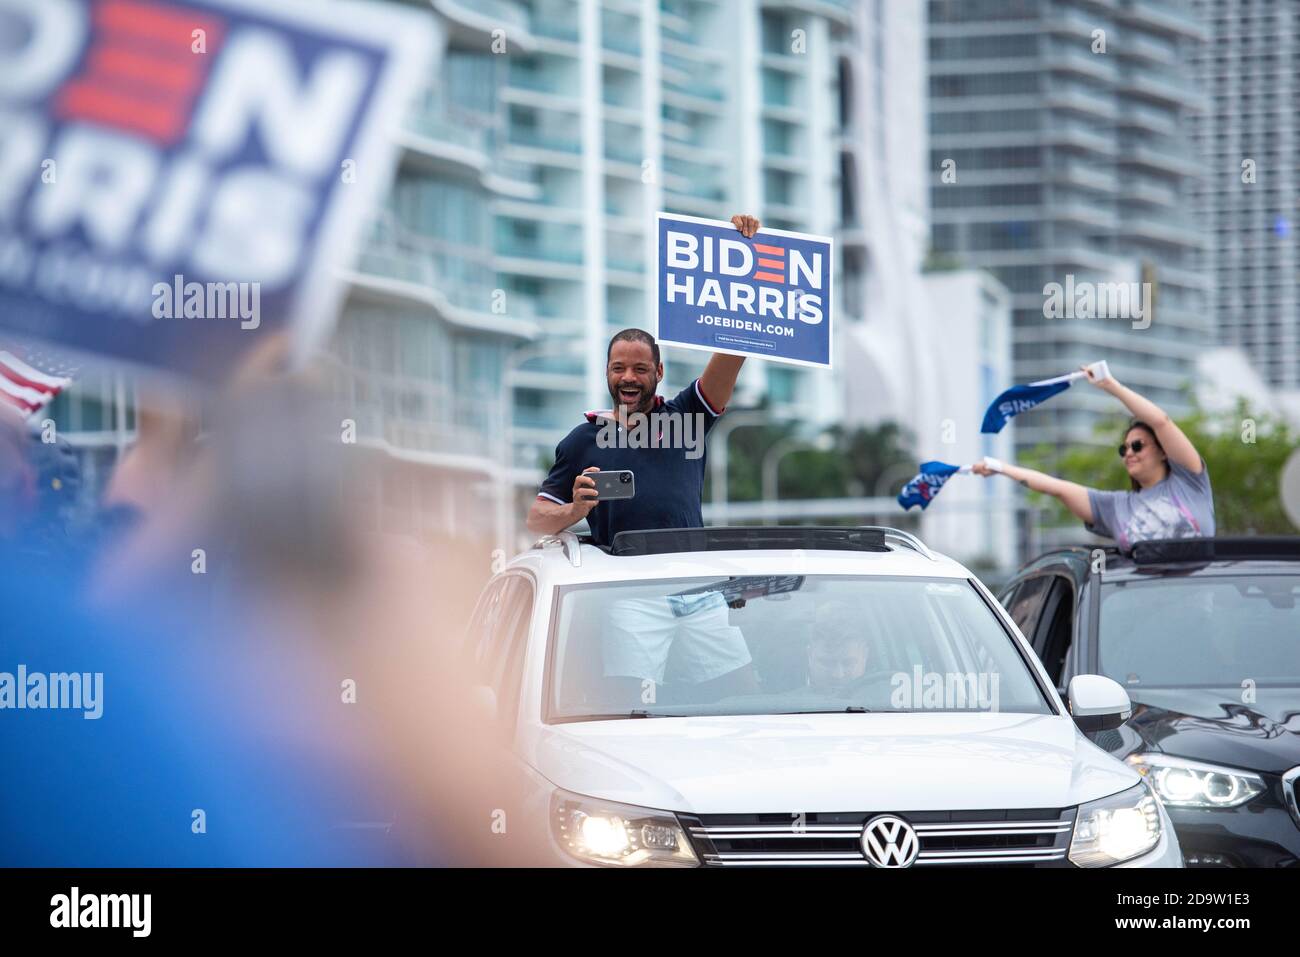 Miami, Floride, États-Unis. 7 novembre 2020. Les partisans du président élu Joseph R. Biden Jr. Dansent dans les rues de Miami pour célébrer sa victoire à l'élection 2020 Credit: ORIT Ben-Ezzer/ZUMA Wire/Alay Live News Banque D'Images